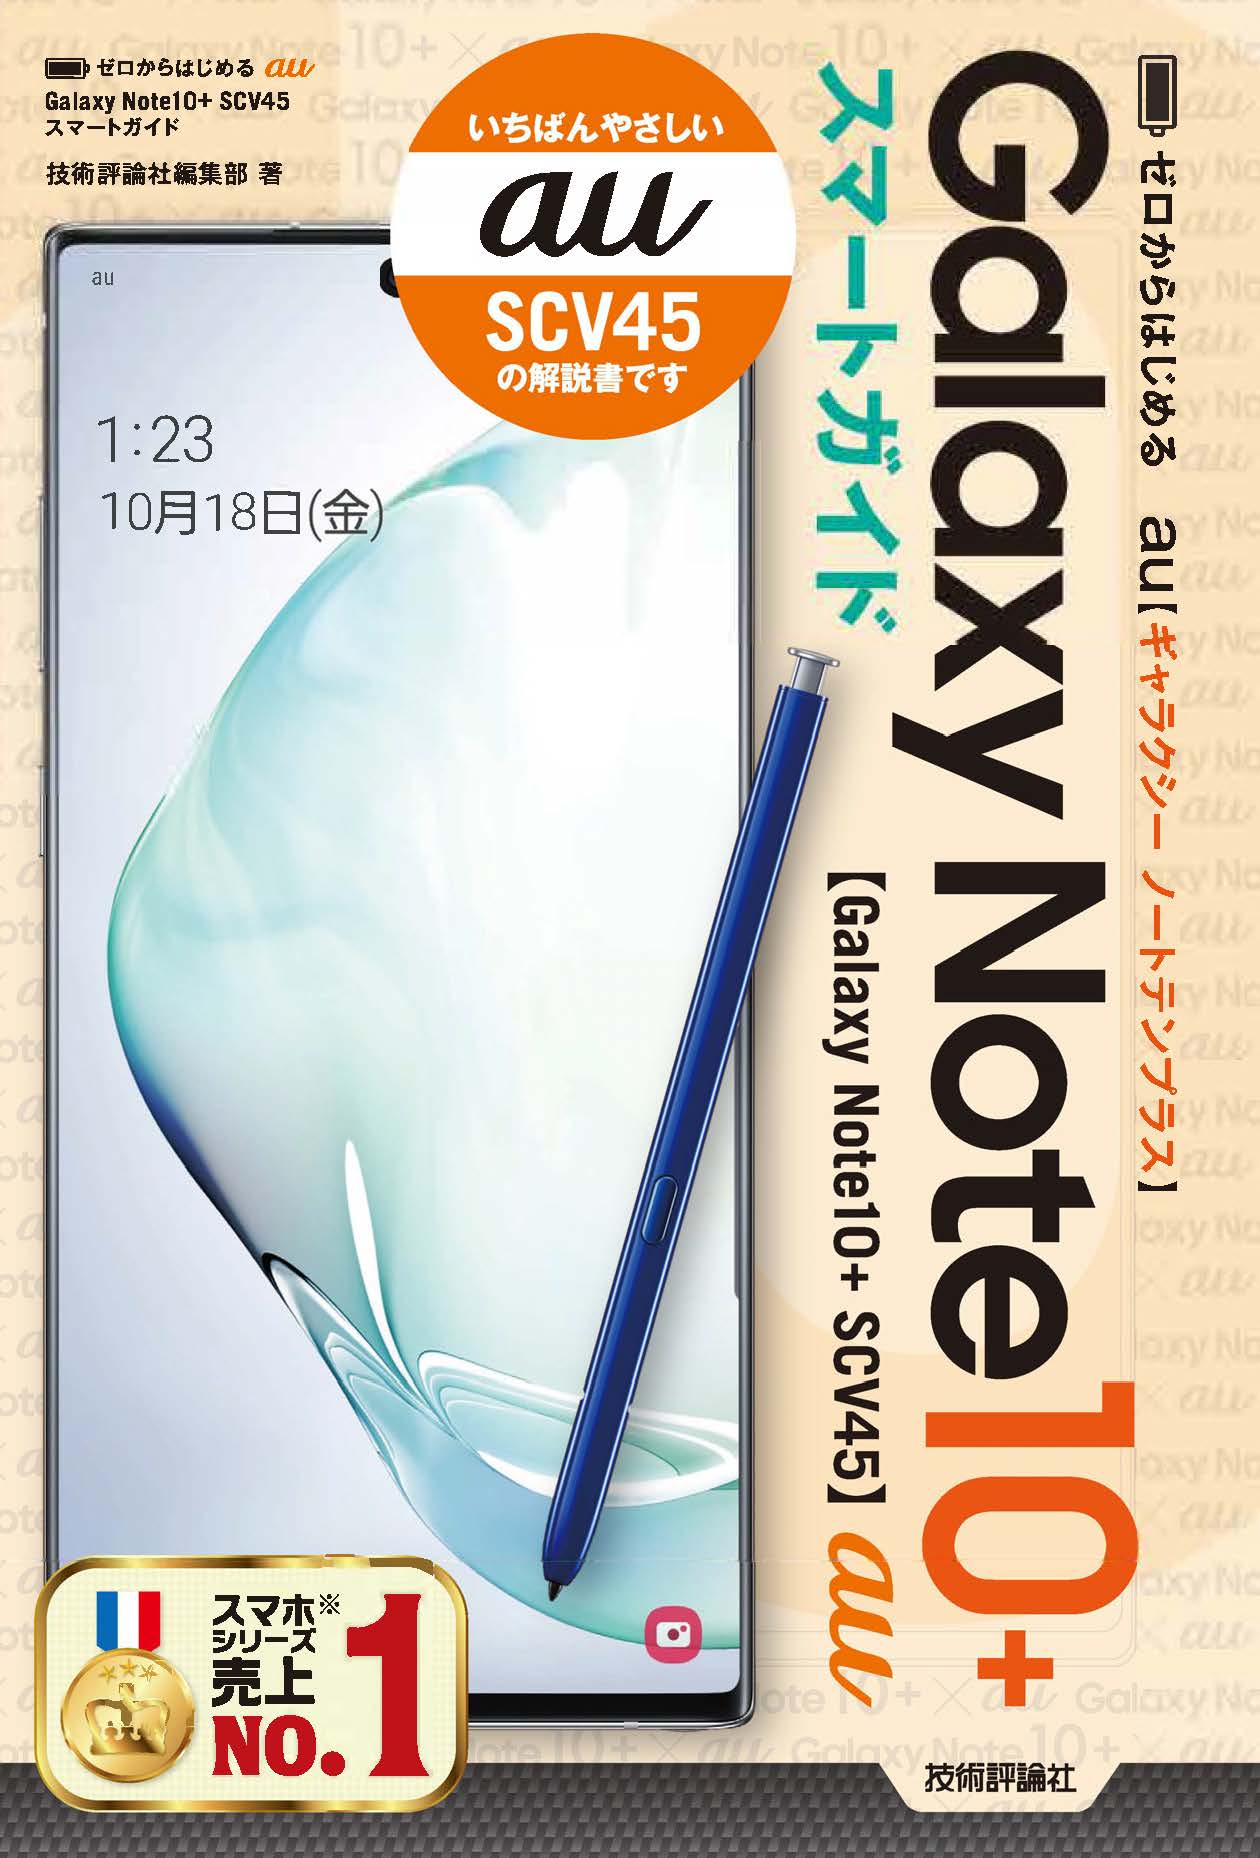 Galaxy Note10+ SCV45(SIMフリー) - スマートフォン本体